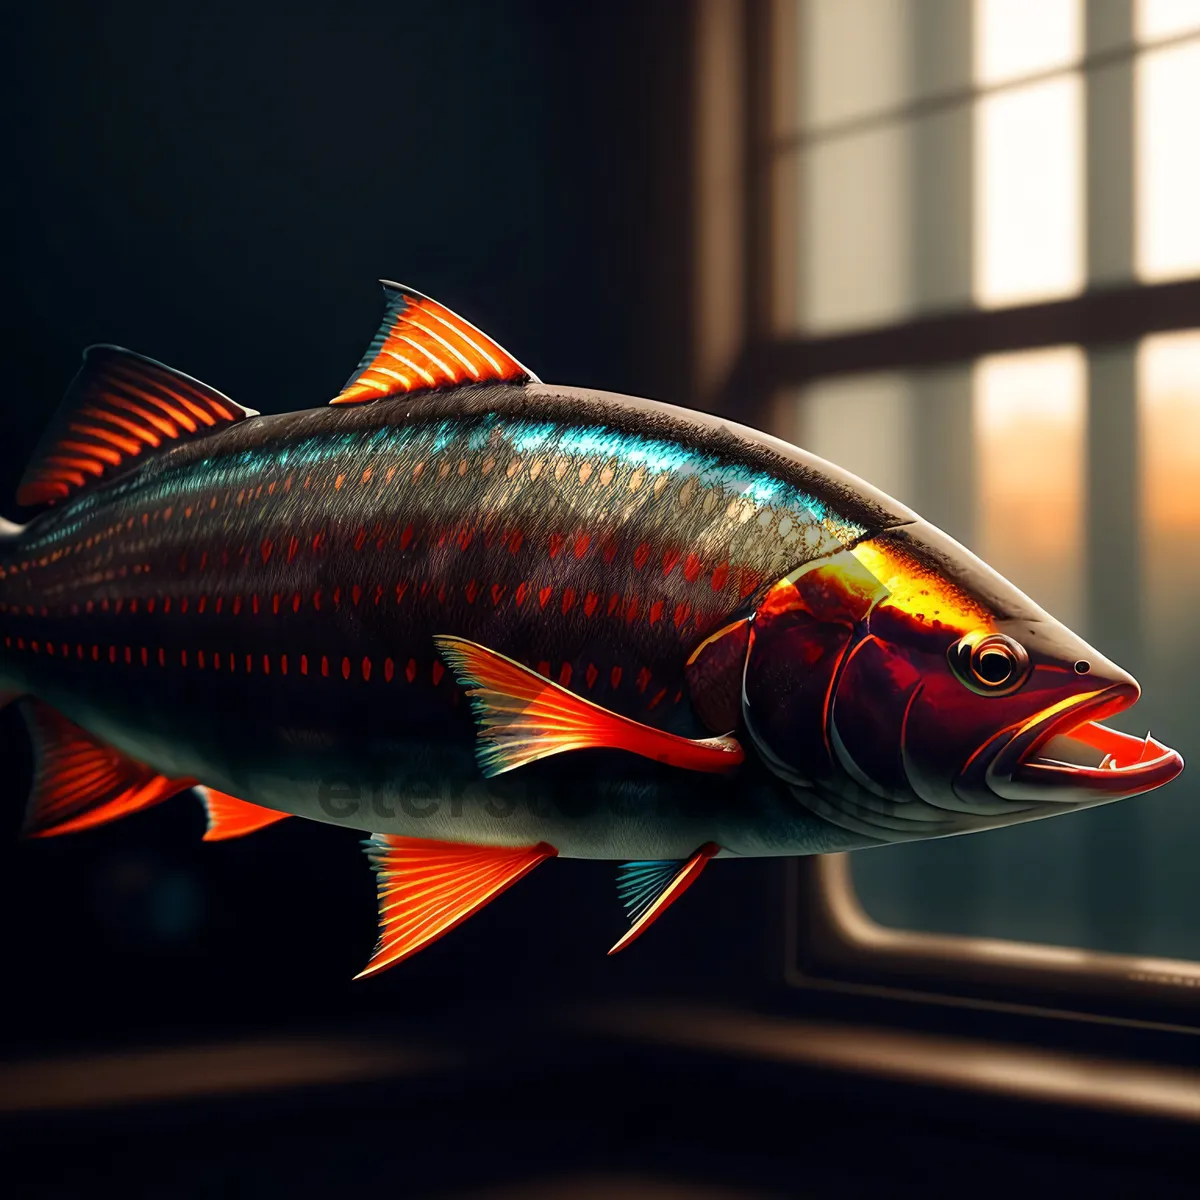 Picture of Tropical Aquarium Fish with Vibrant Orange Fin